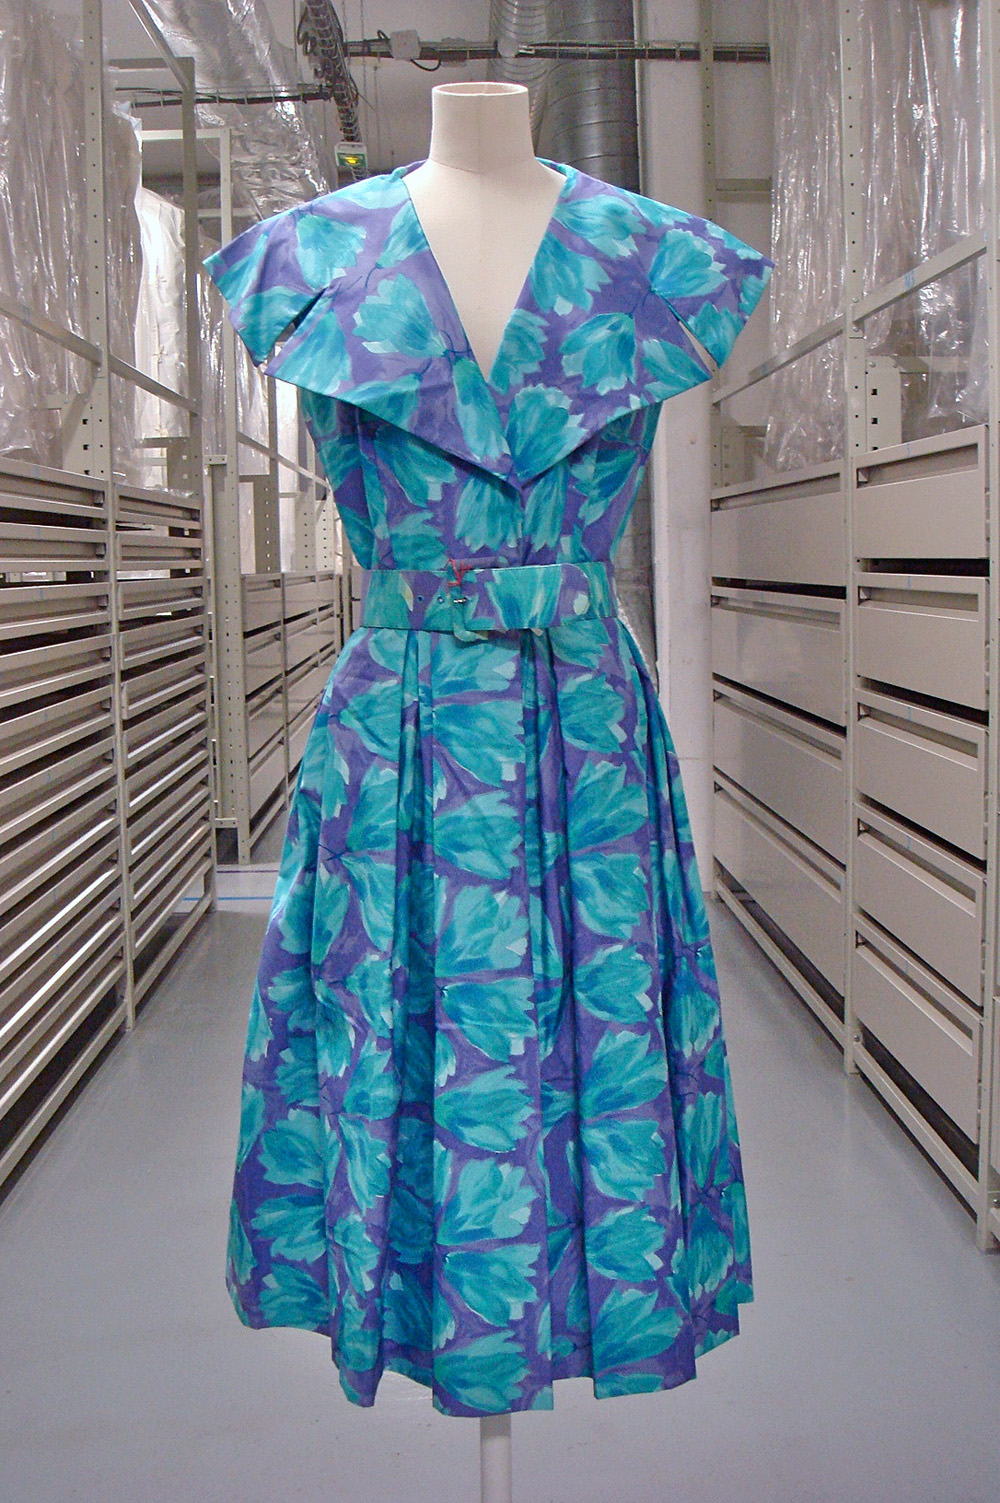 Dress, collection of the Musée de la Mode de la Ville de Paris, Palais Galliera, Paris.